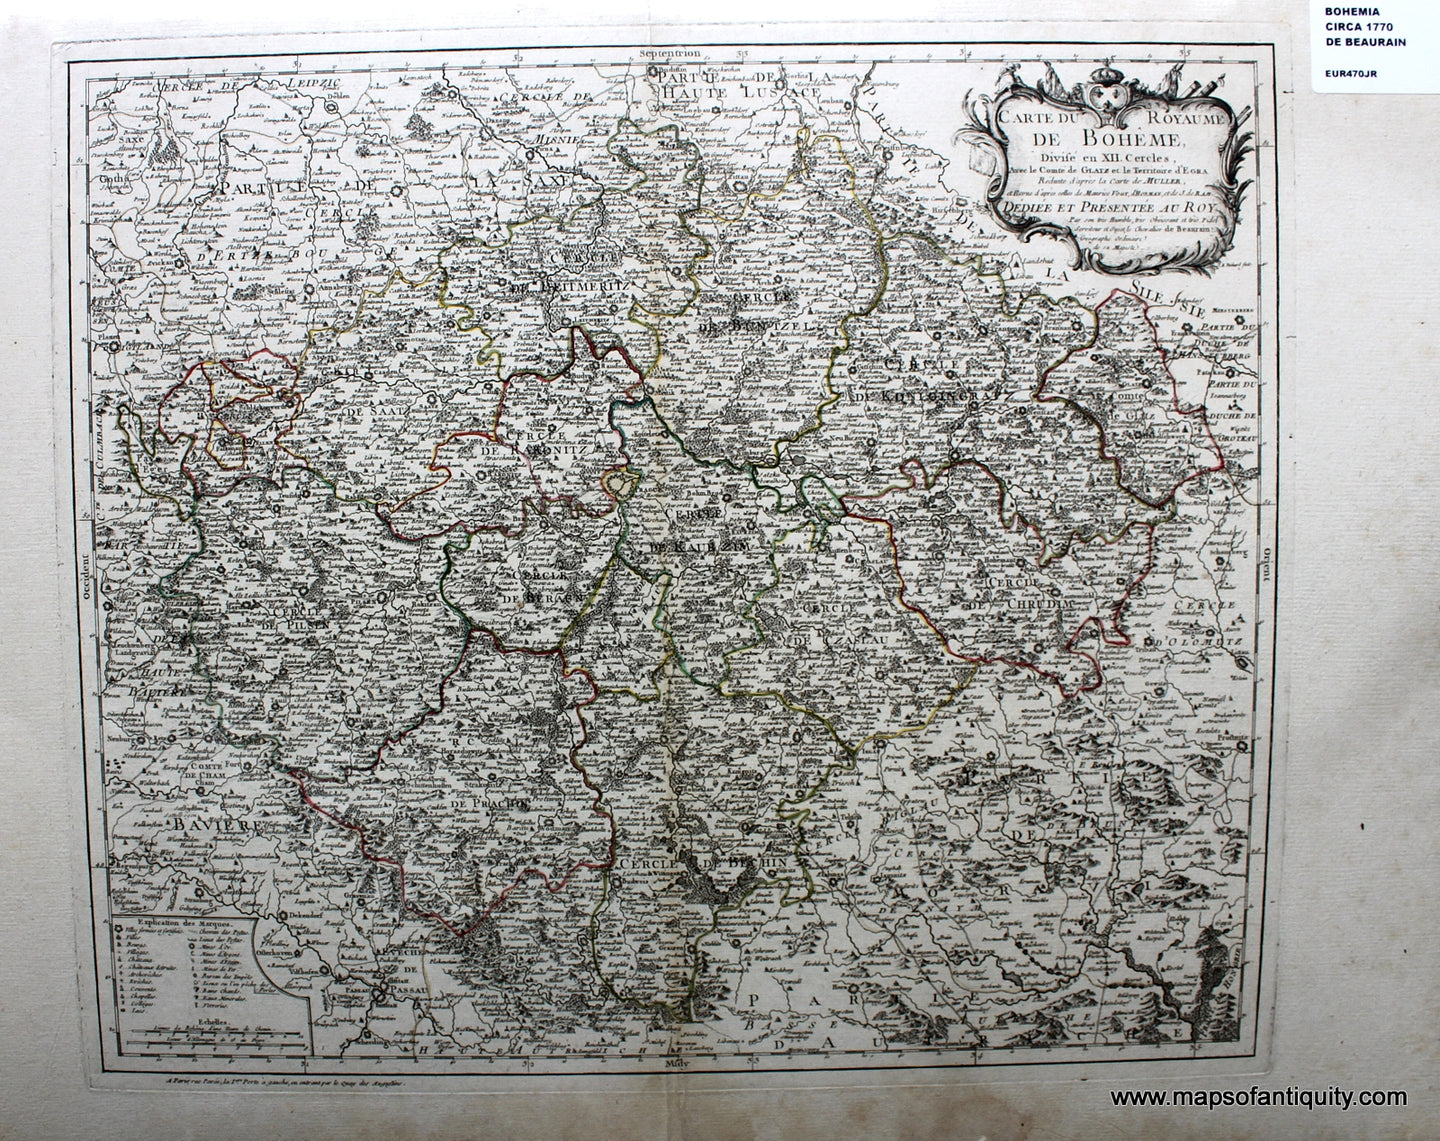 Antique-Hand-Colored-Map-Carte-du-Royaume-de-Boheme-Divise-en-XII-Cercles-**********-Europe-Germany-1770-De-Beaurain-after-Muller-Maps-Of-Antiquity